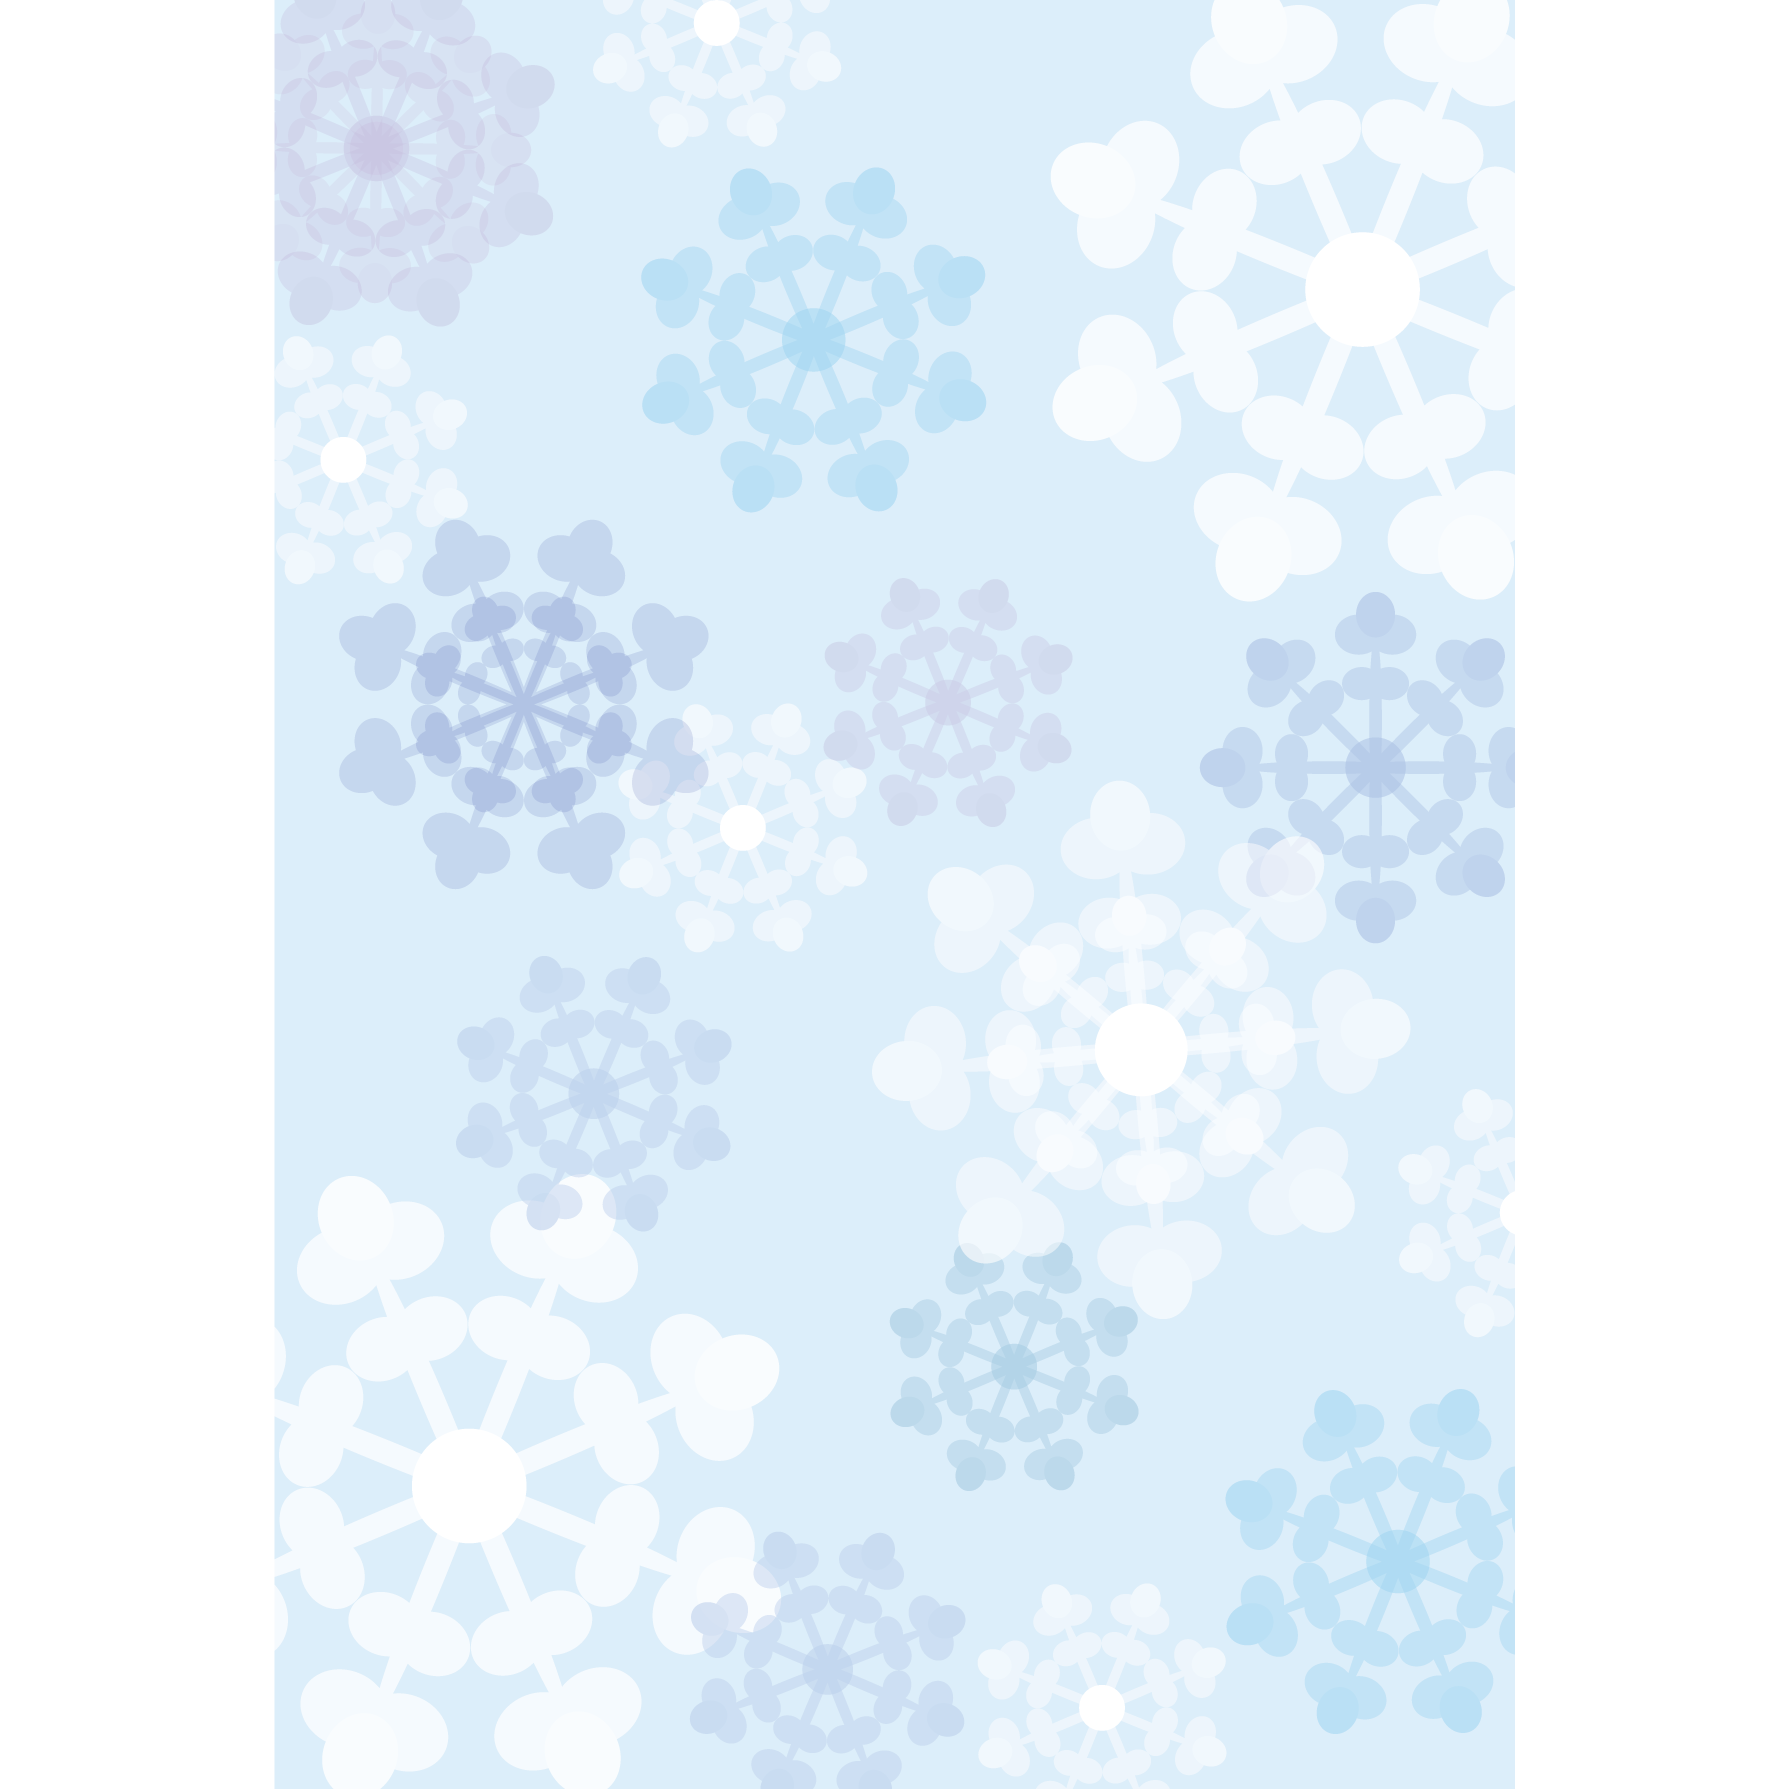 かわいい 雪の結晶の背景 デザイン素材 A4 フリーイラスト 商用フリー 無料 のイラスト素材なら イラストマンション